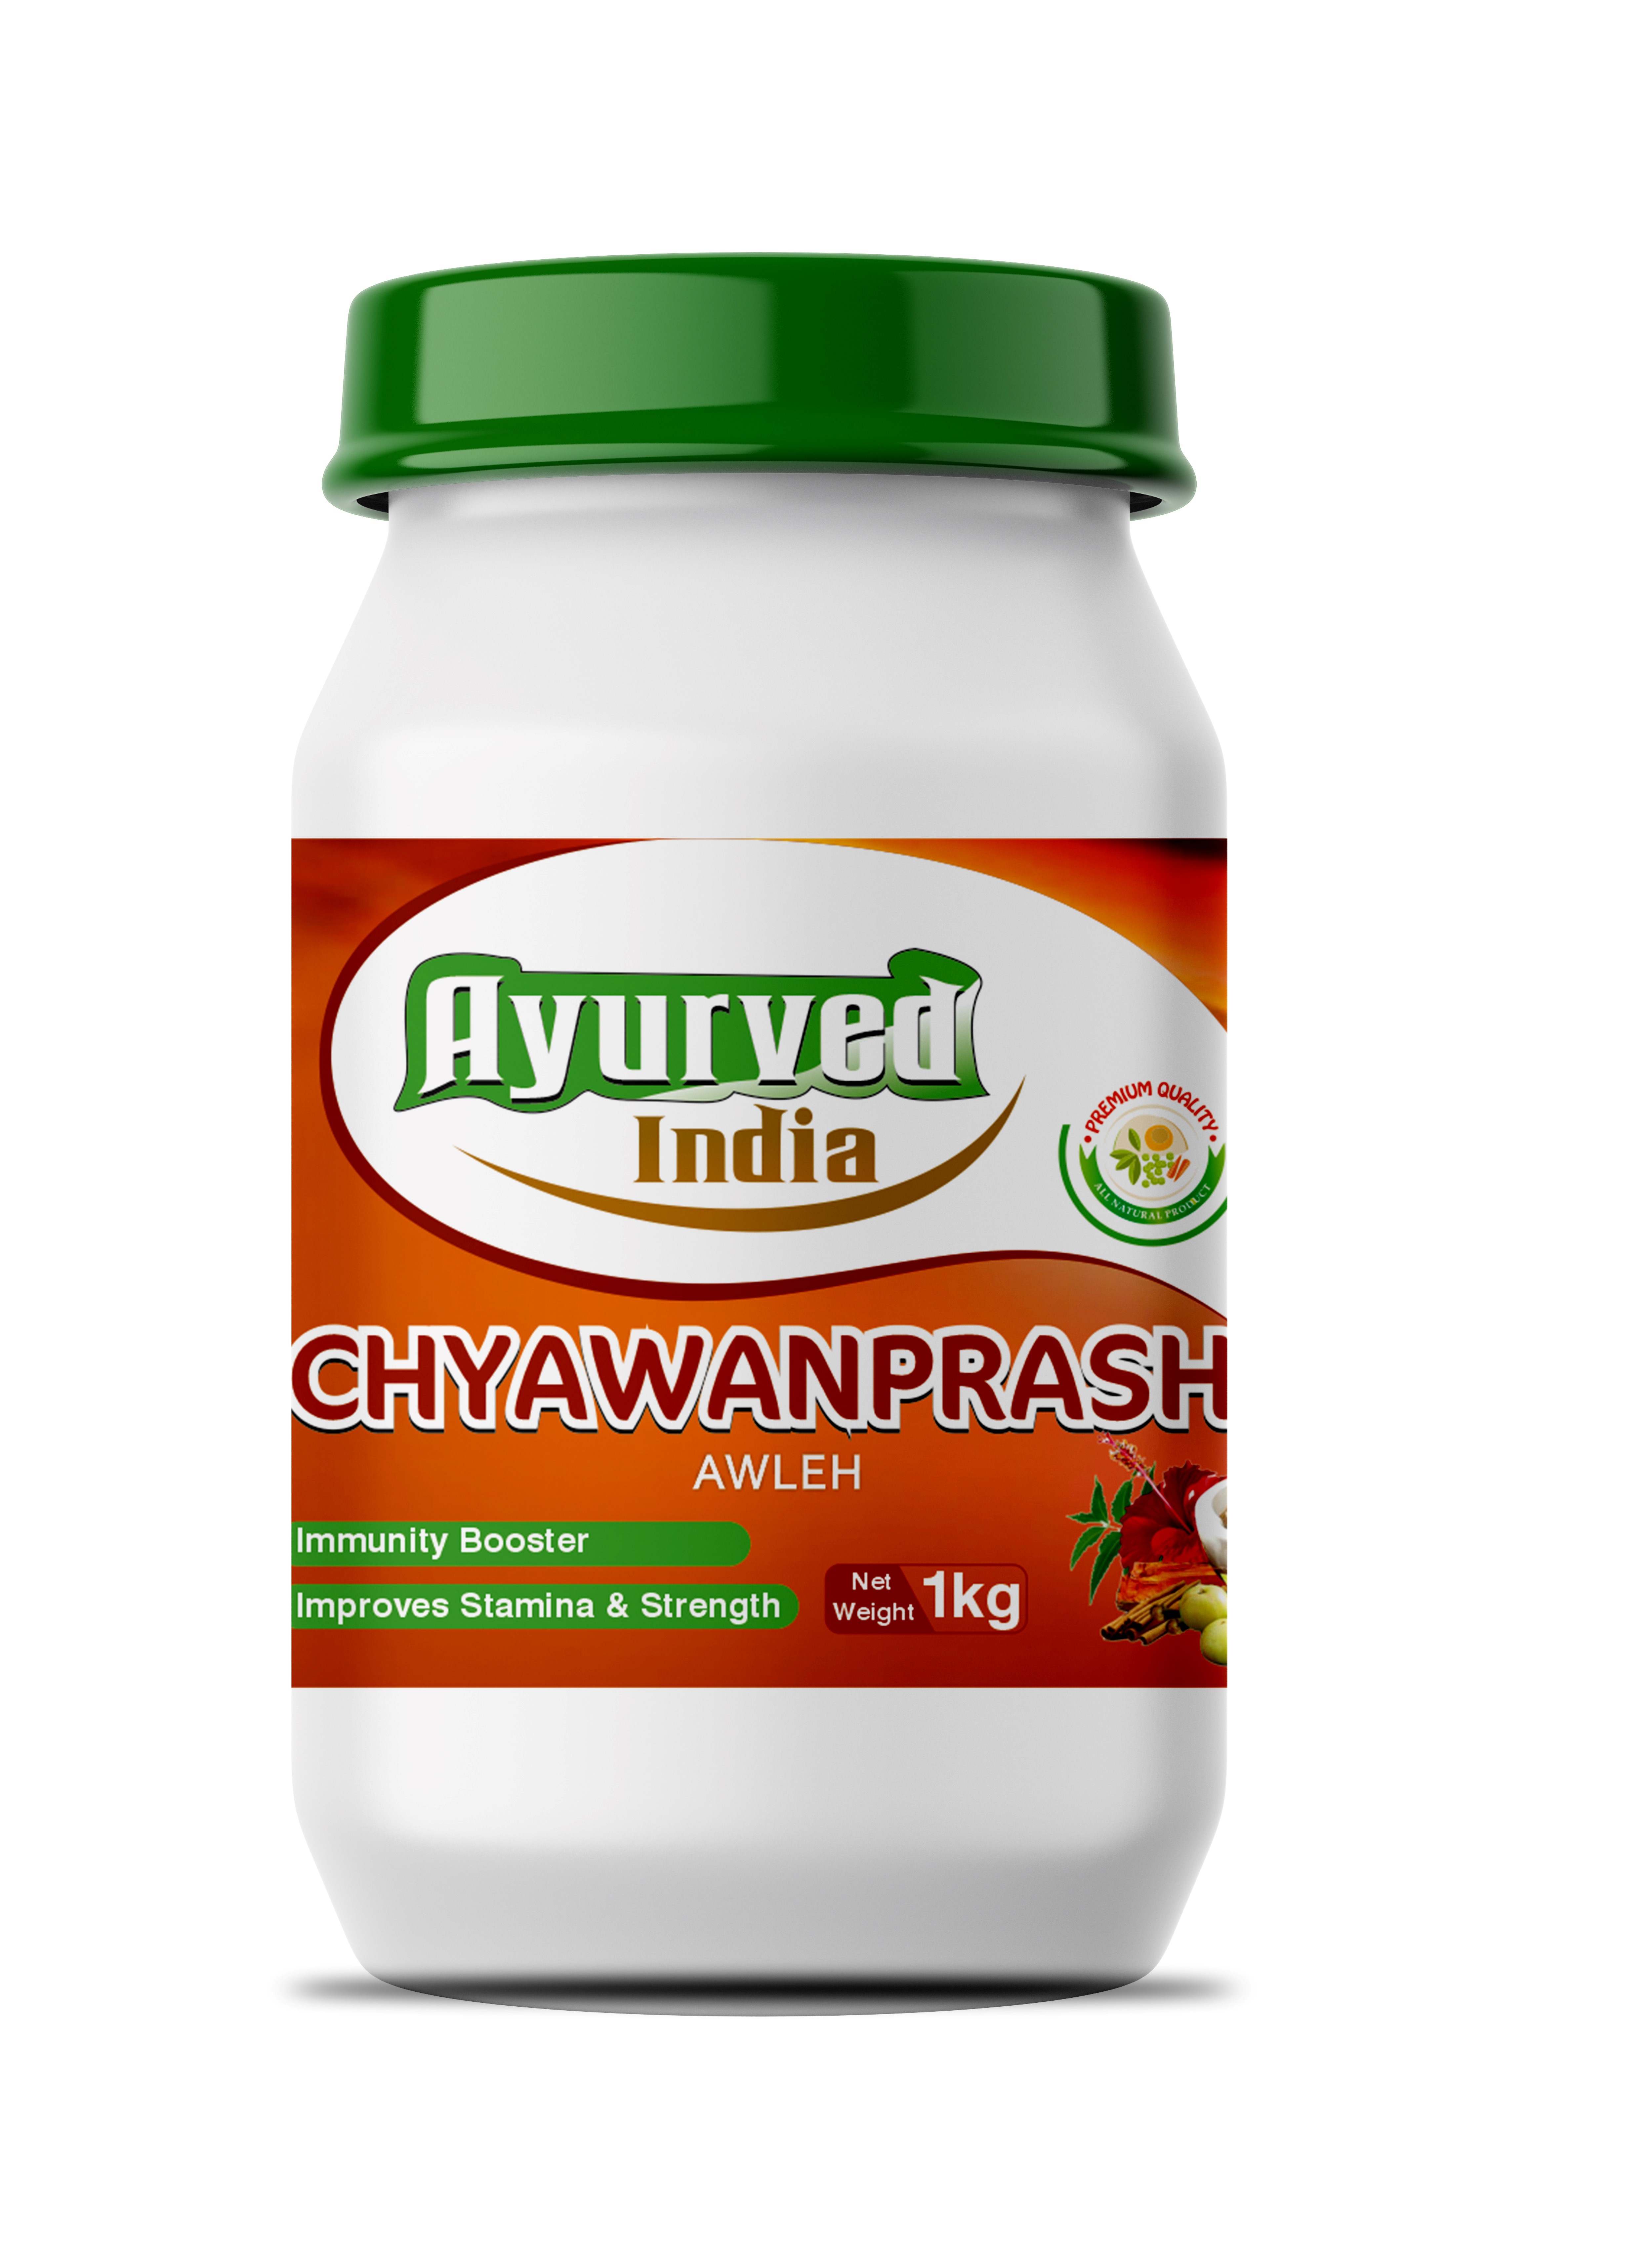 CHYAWANPRASH AWLEH - 1Kg from AYURVED INDIA